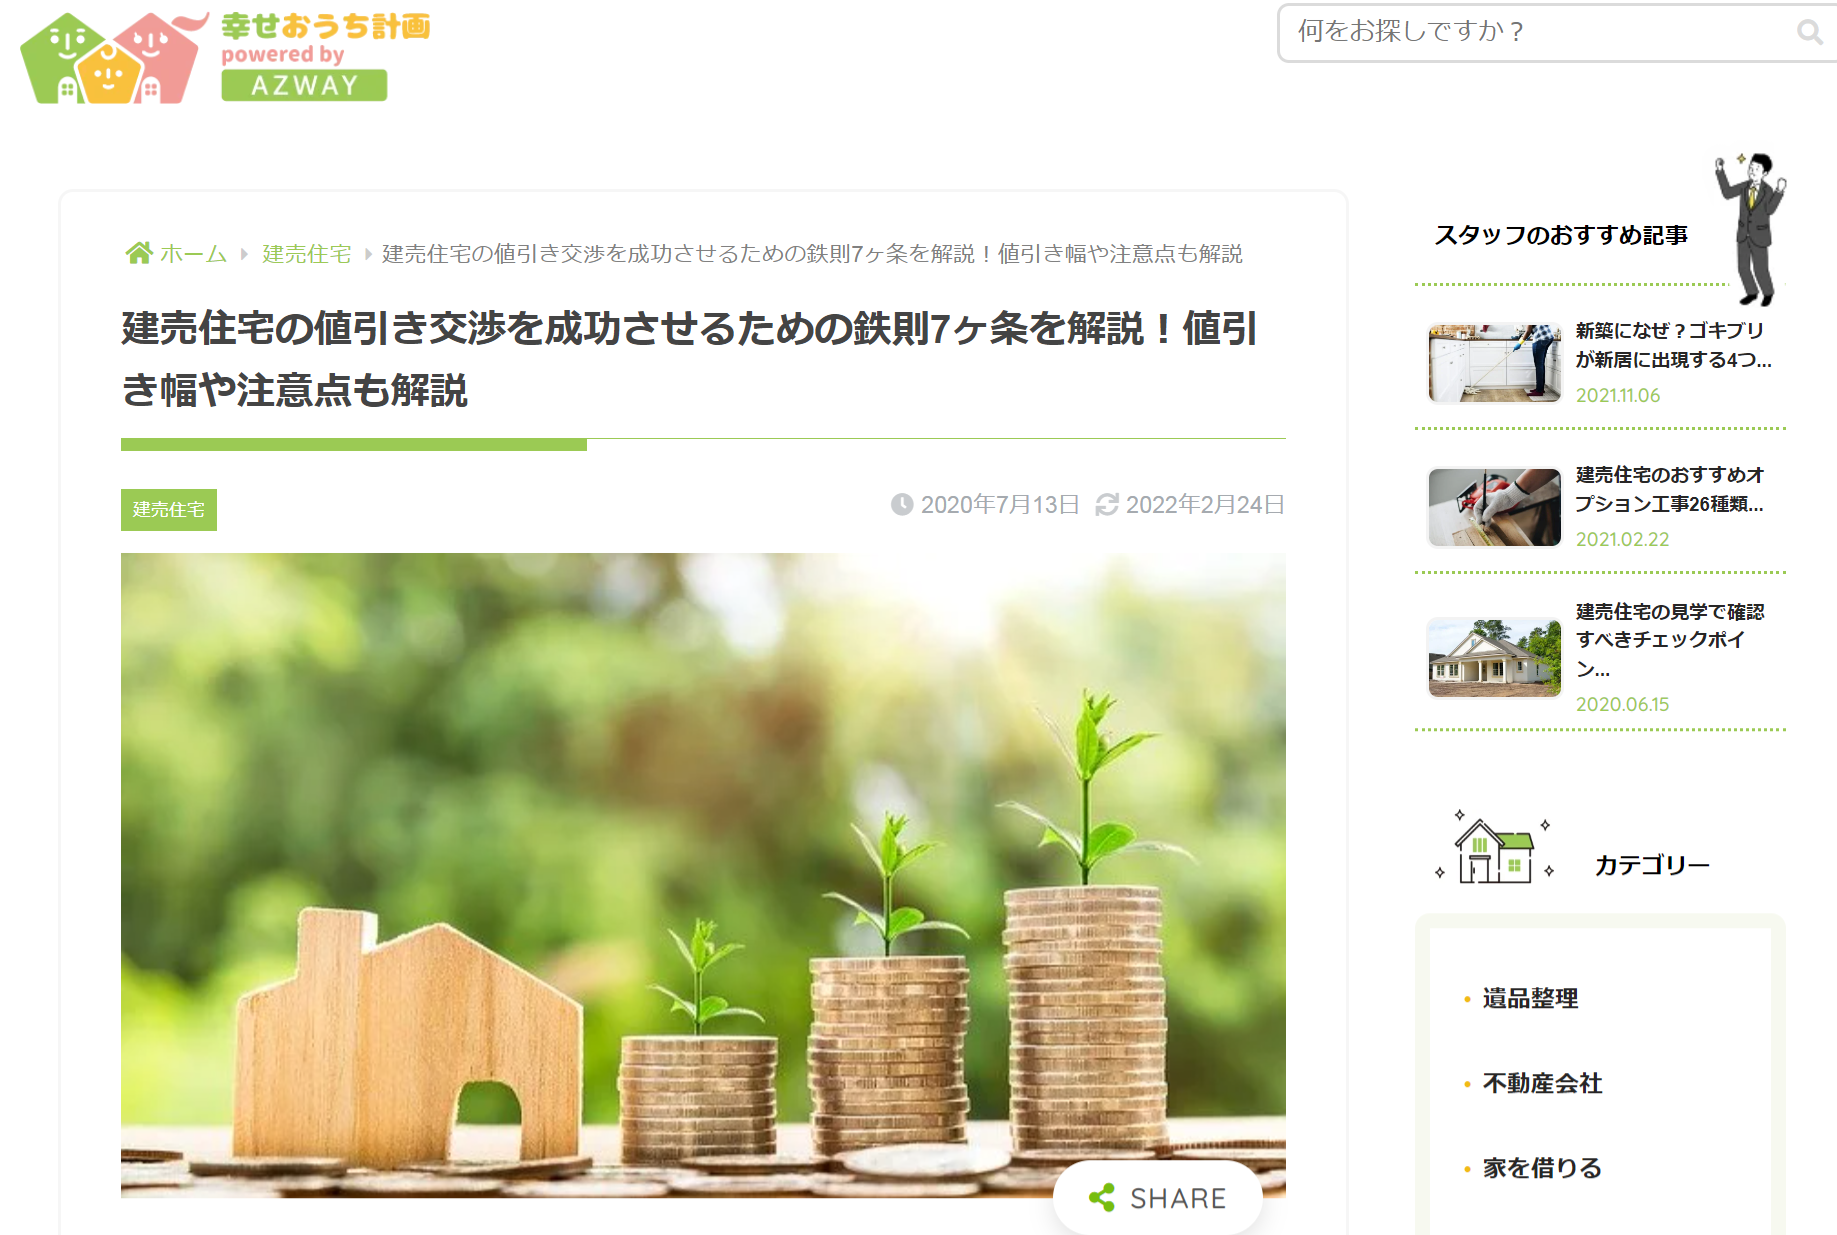 幸せおうち計画公式サイト「値引き交渉のメソッド」の画像